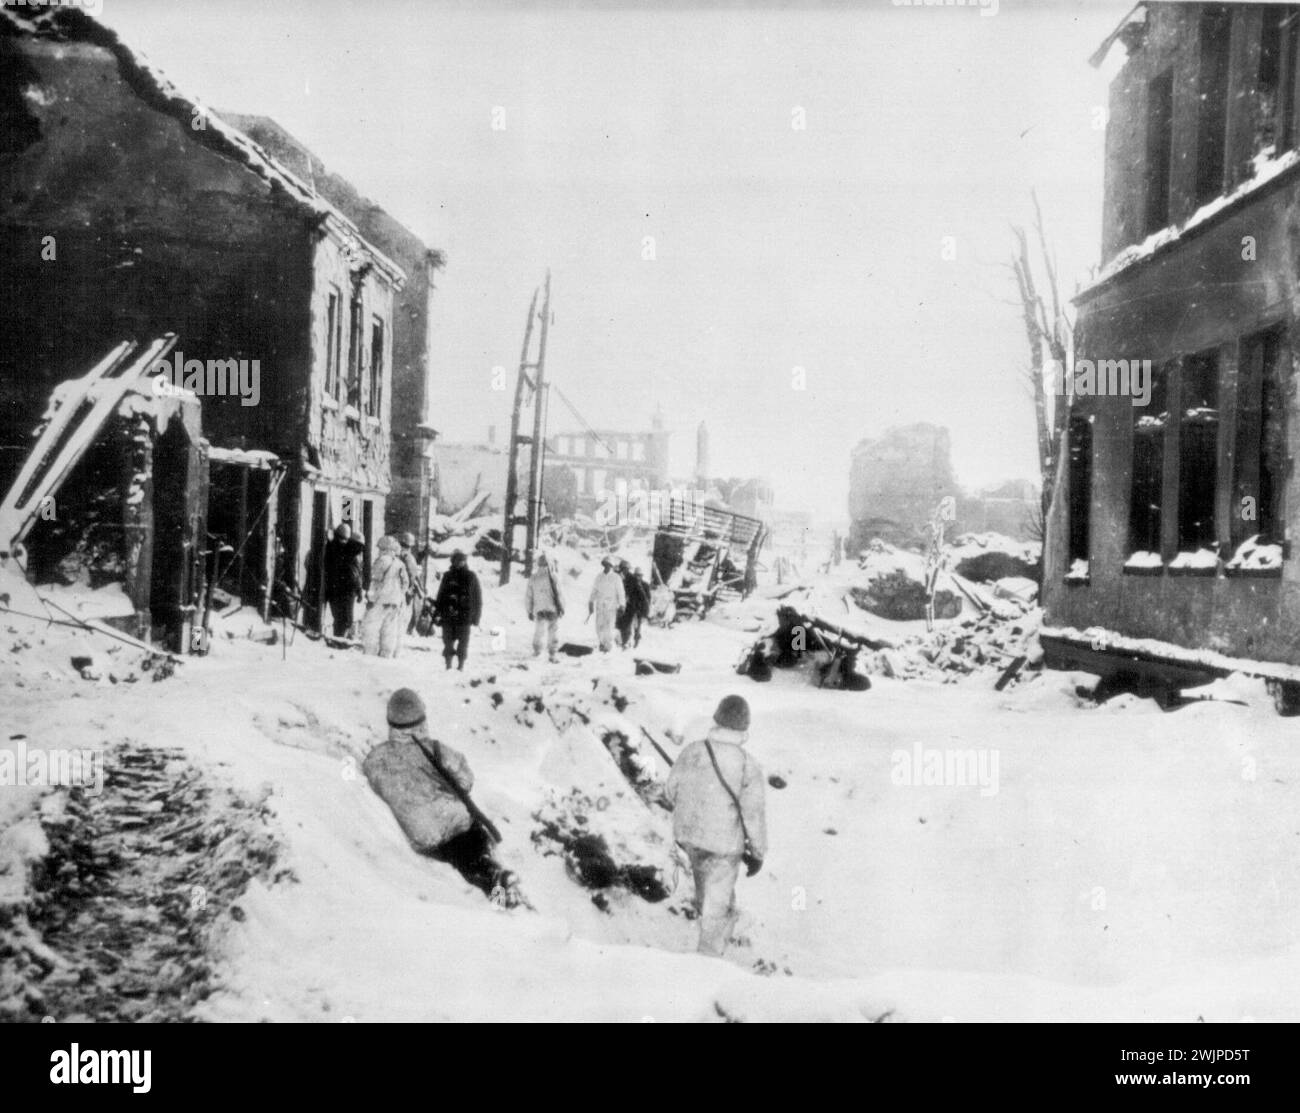 Wracked St. Vith in Schwarz und weiß -- US-Truppen der Ersten Armee, verputzt in Tarnschutzanzügen, Wiedersehen in den schneebedeckten Straßen und geschwärzten Häusern von St. Vith, Belgien, nachdem die Stadt von den deutschen Streitkräften erobert wurde. 31. Januar 1945. (Foto von AP Wirephoto). Stockfoto